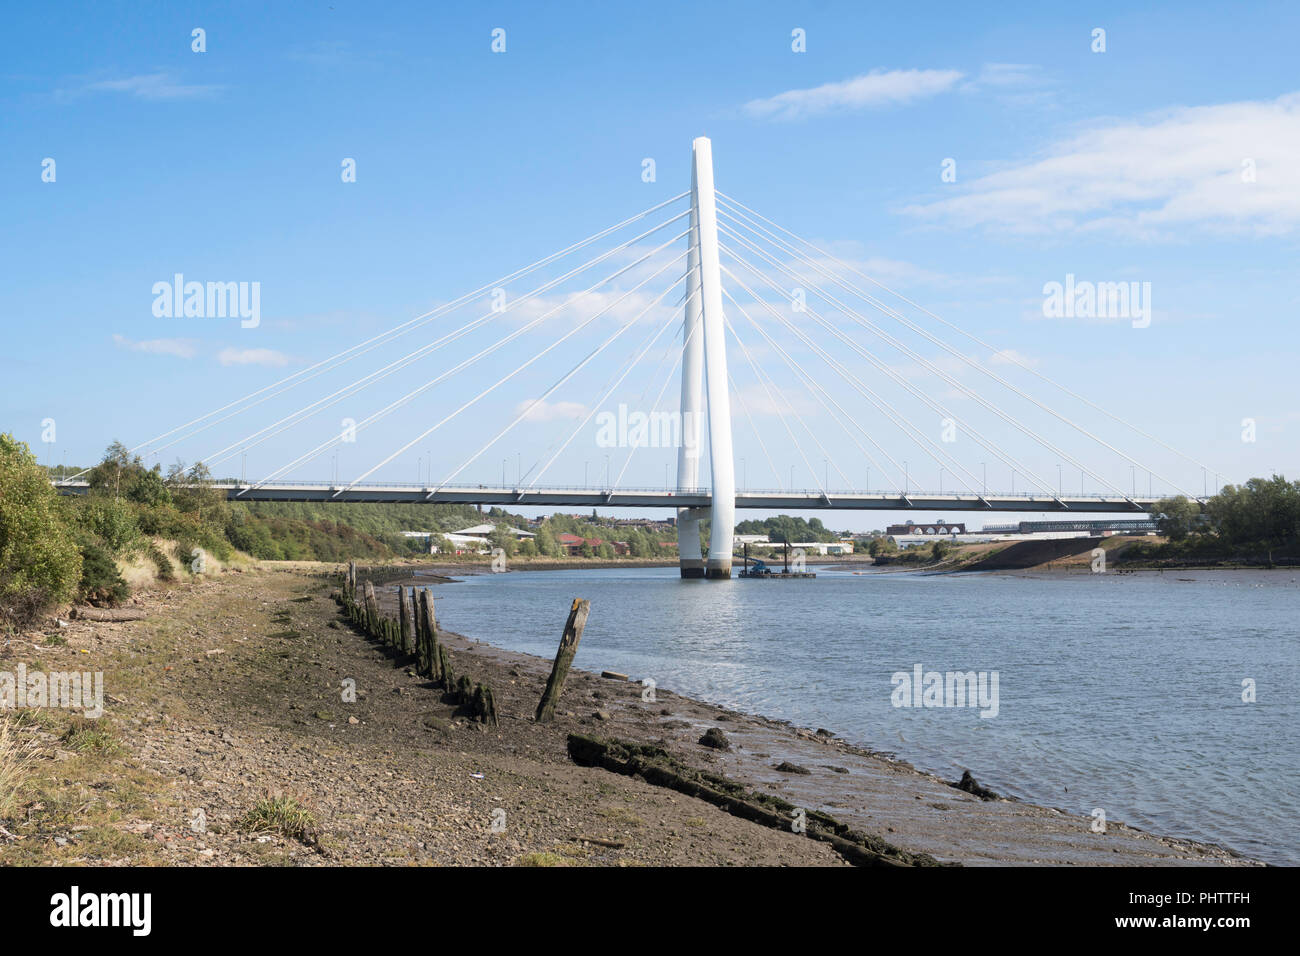 La nuova usura sul fiume crossing, la cuspide settentrionale bridge, Sunderland, England, Regno Unito Foto Stock